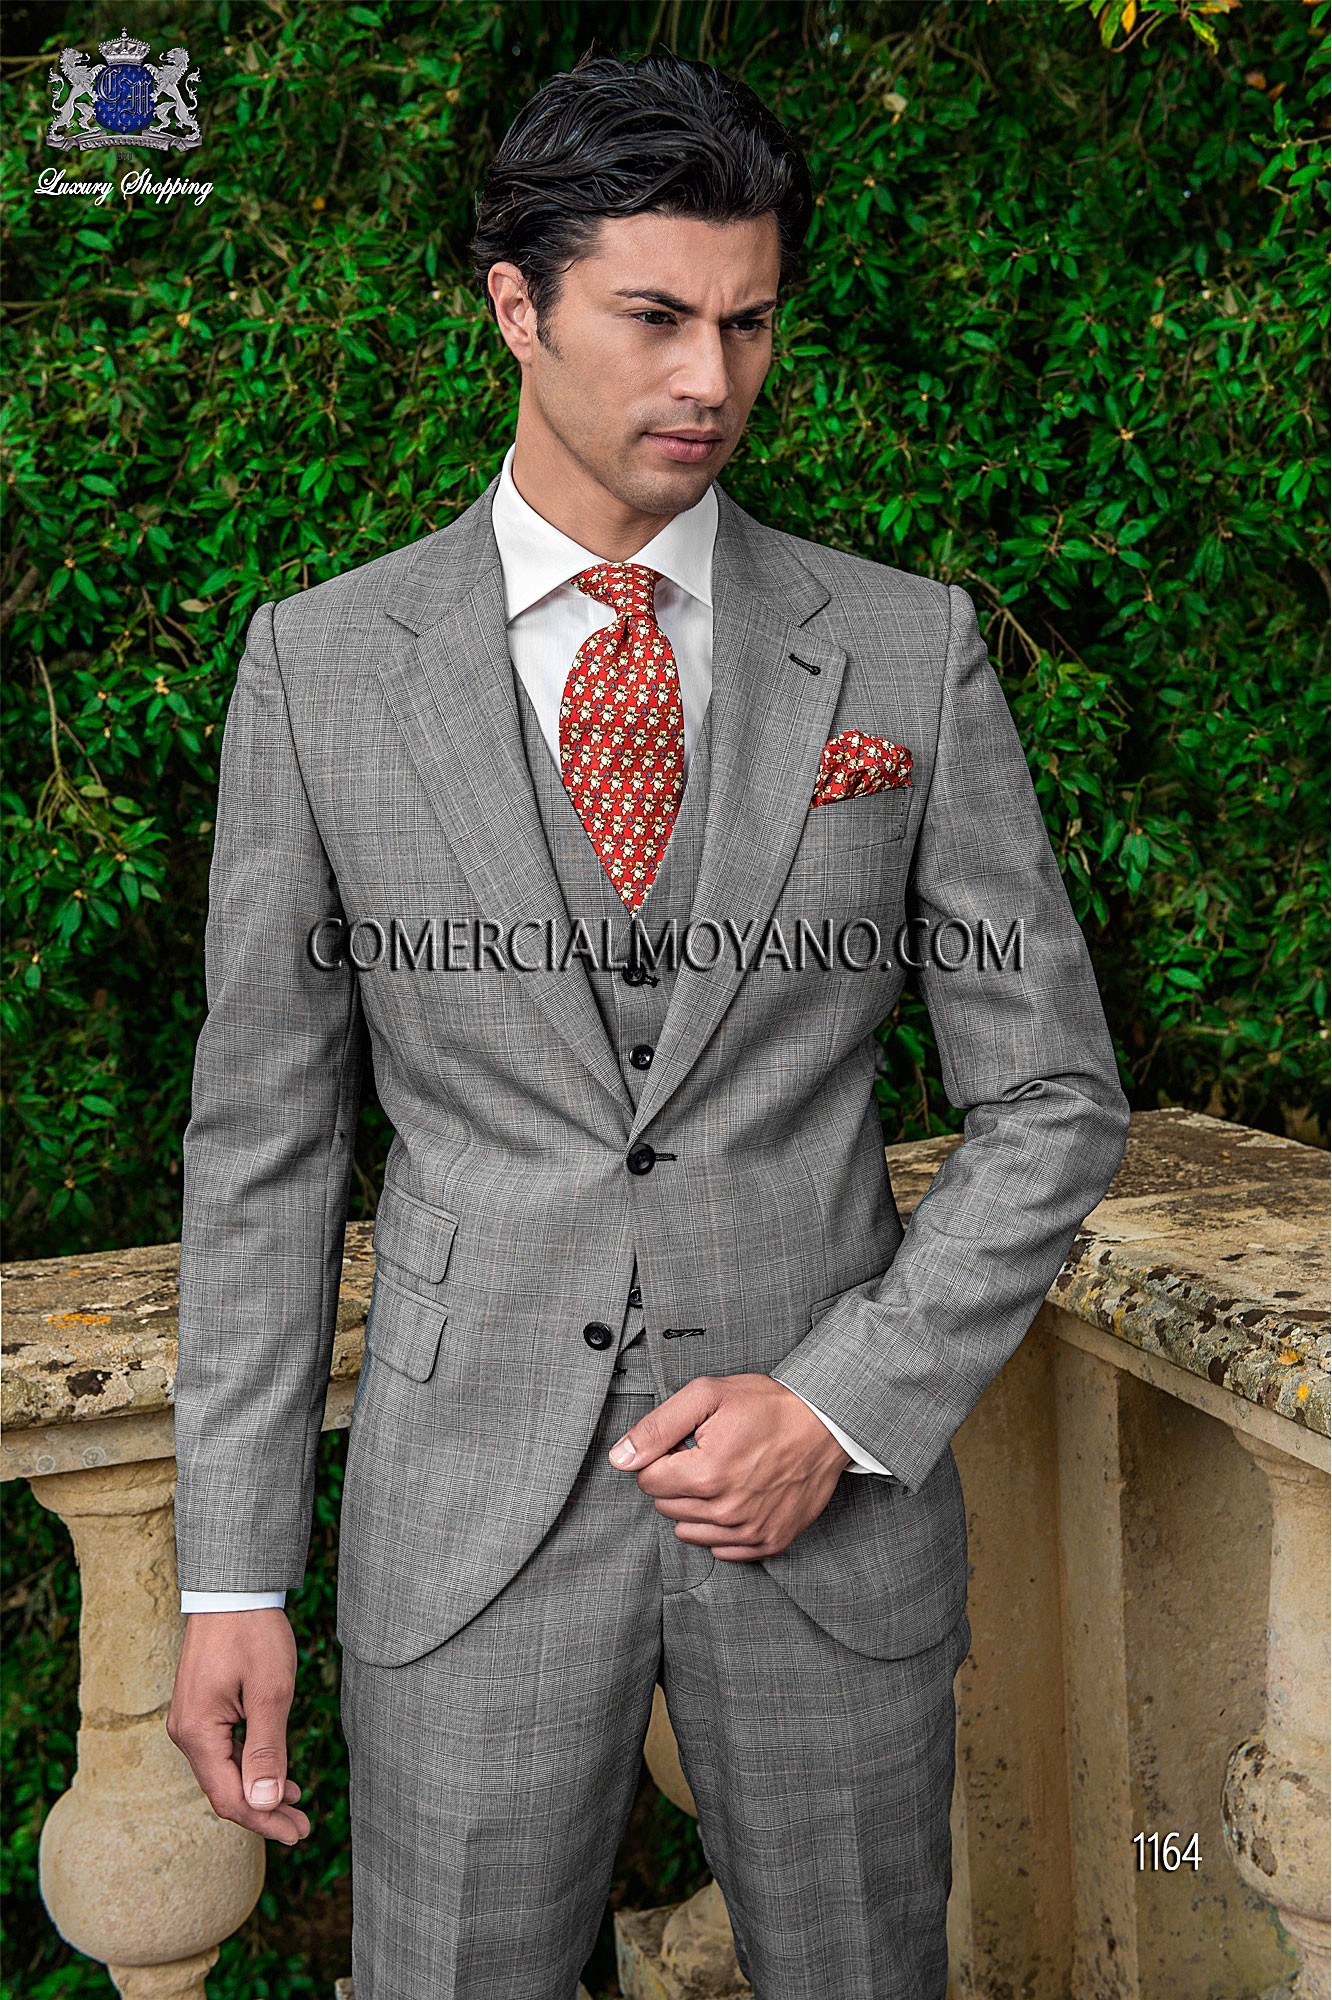 Traje de novio gris modelo: 1164 Mario Moyano colección Gentleman